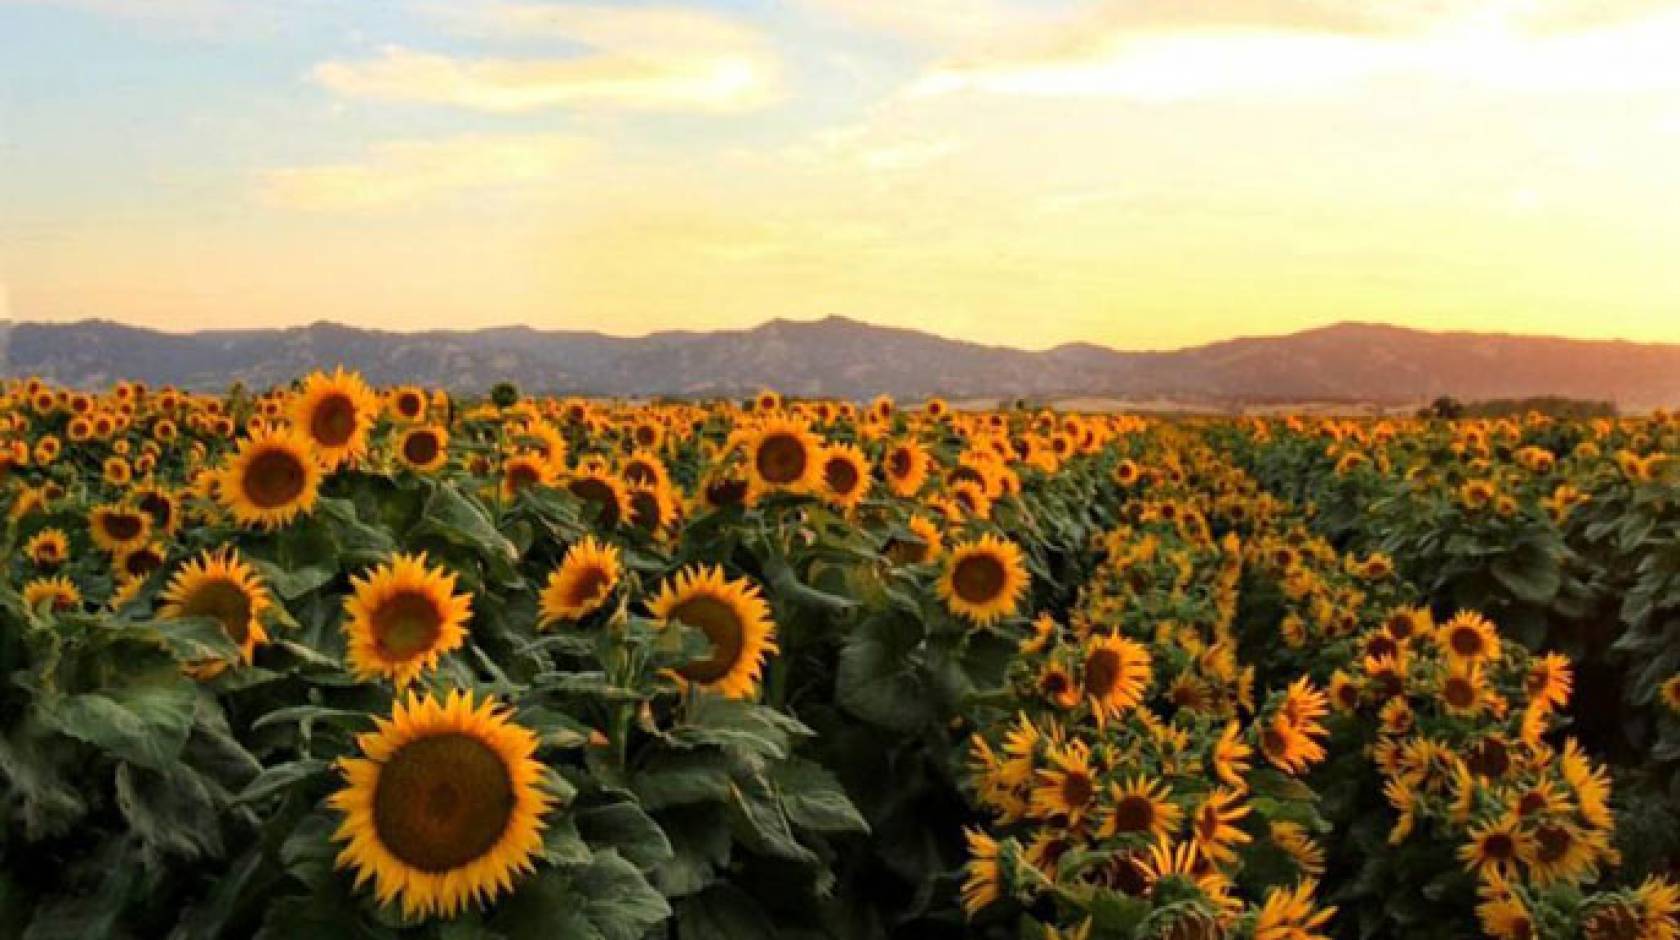 UC Davis sunflower rows